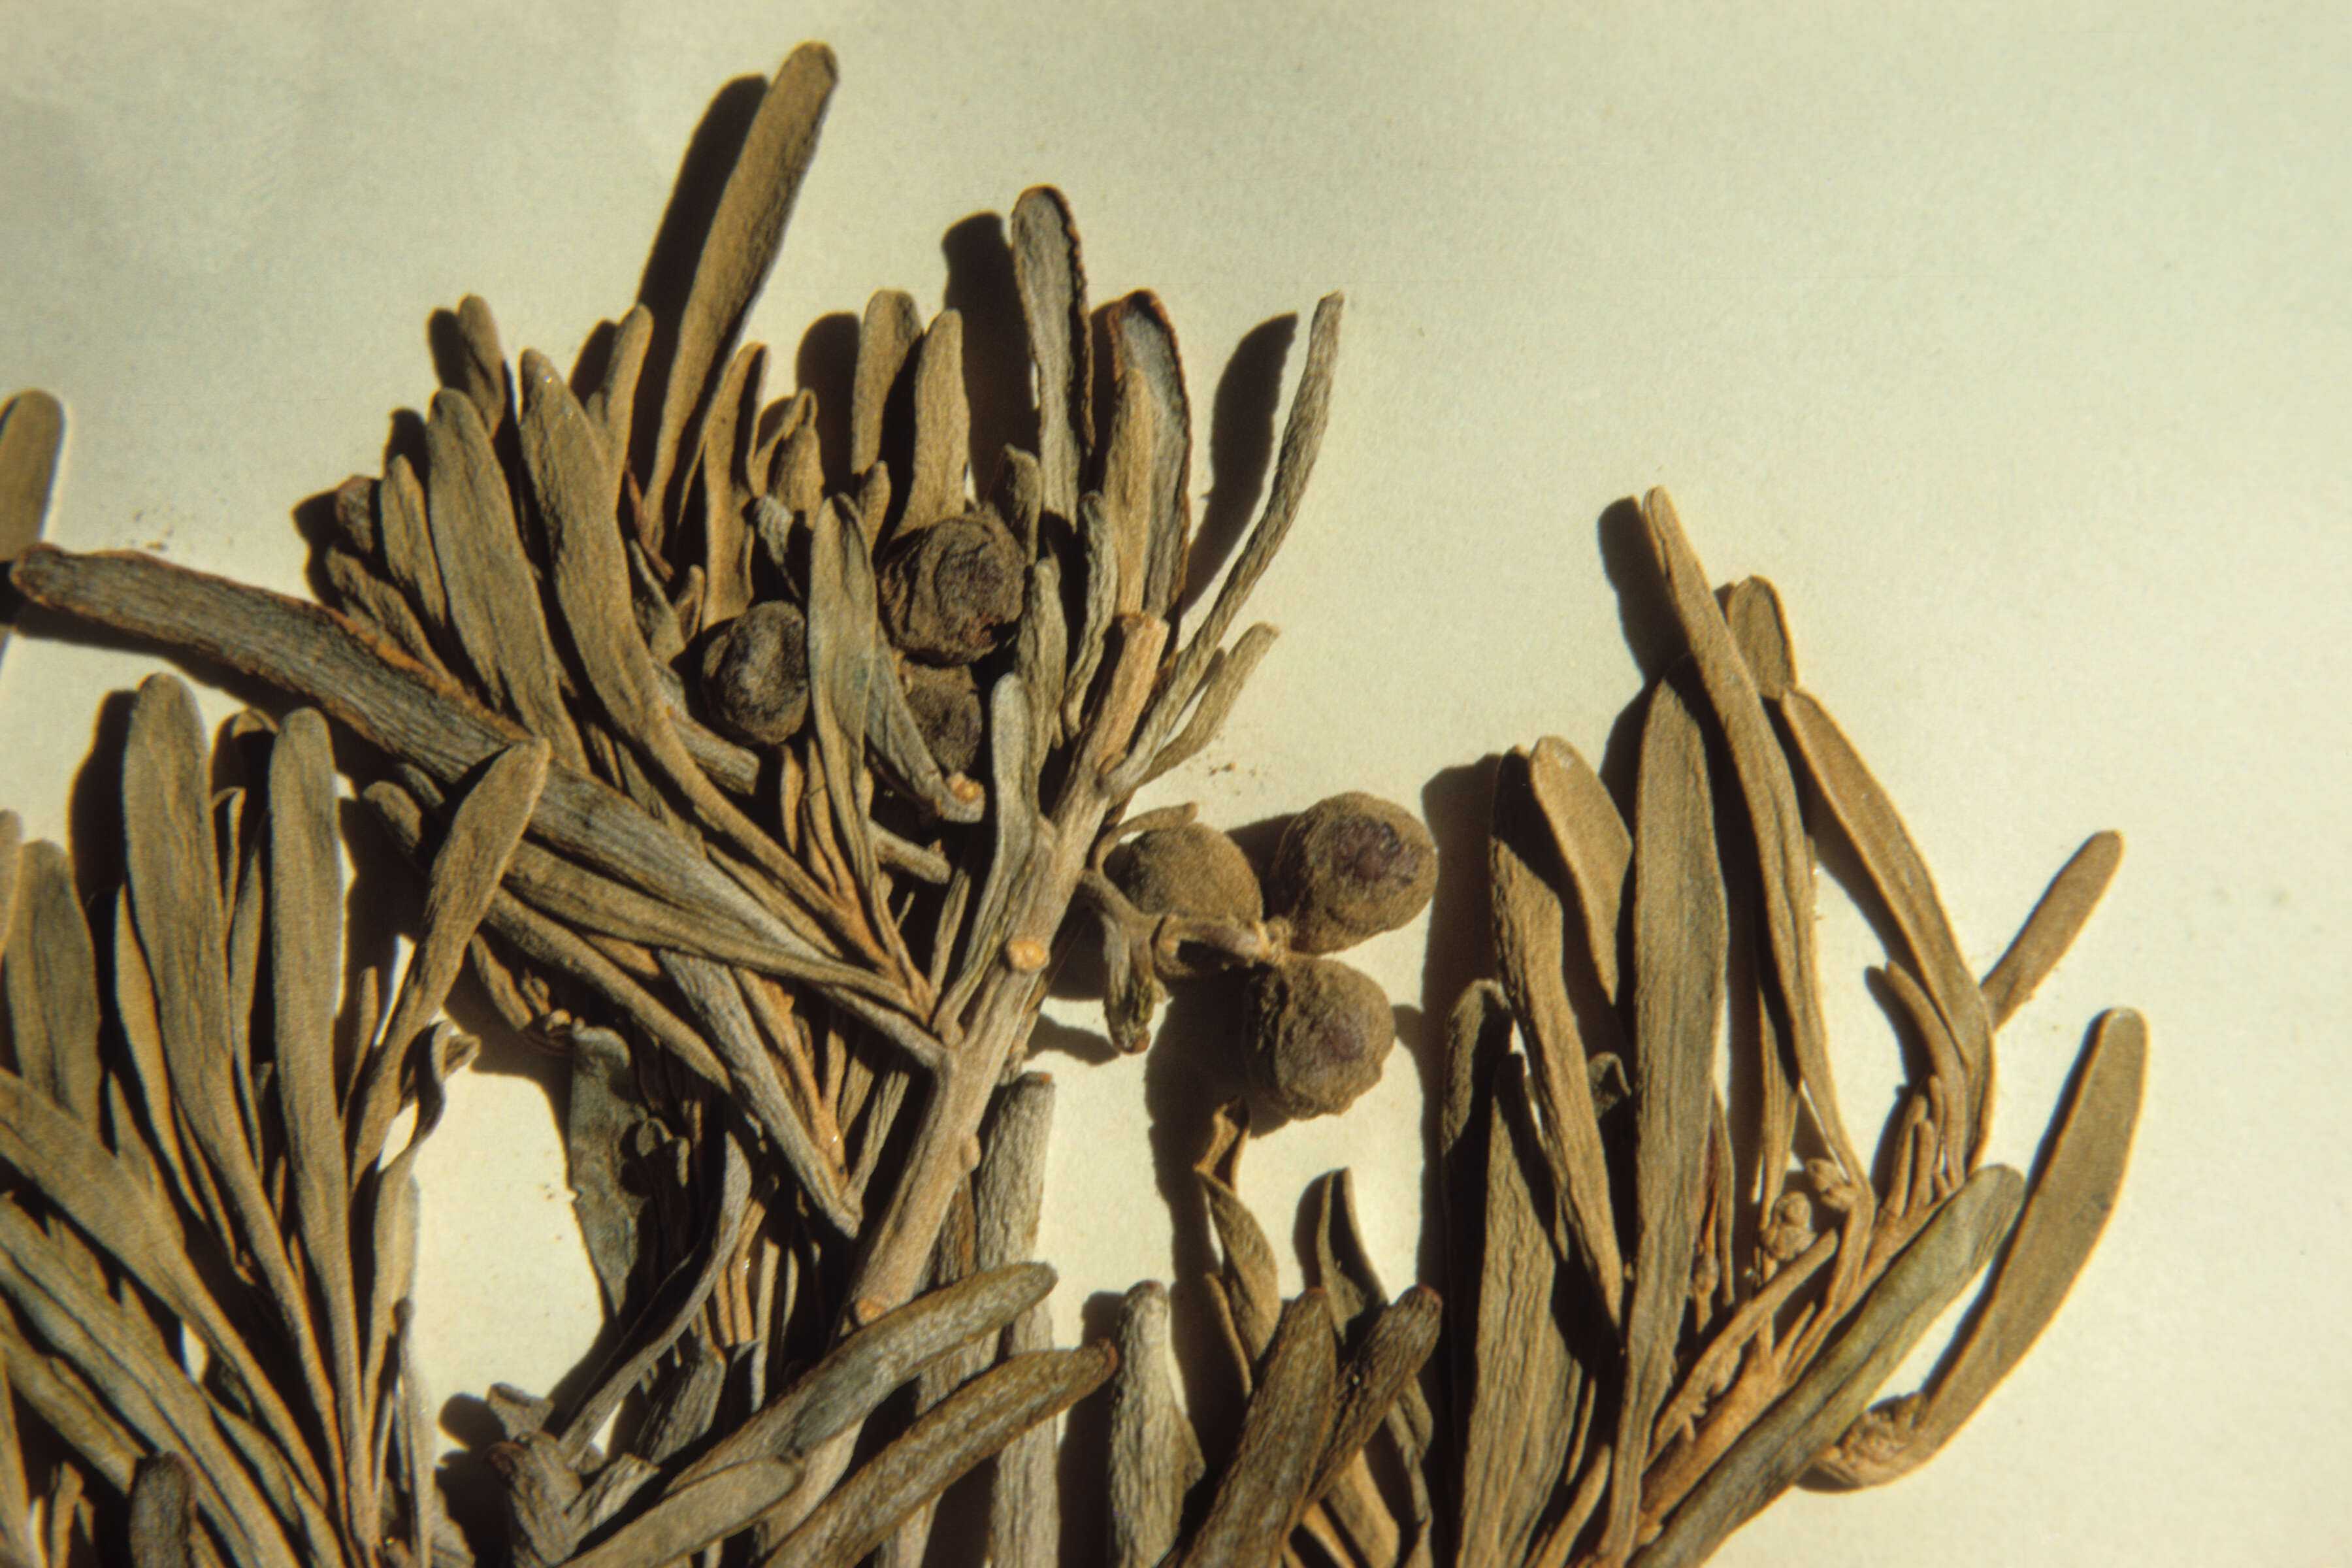 Cneorum pulverulentum (rights holder: )